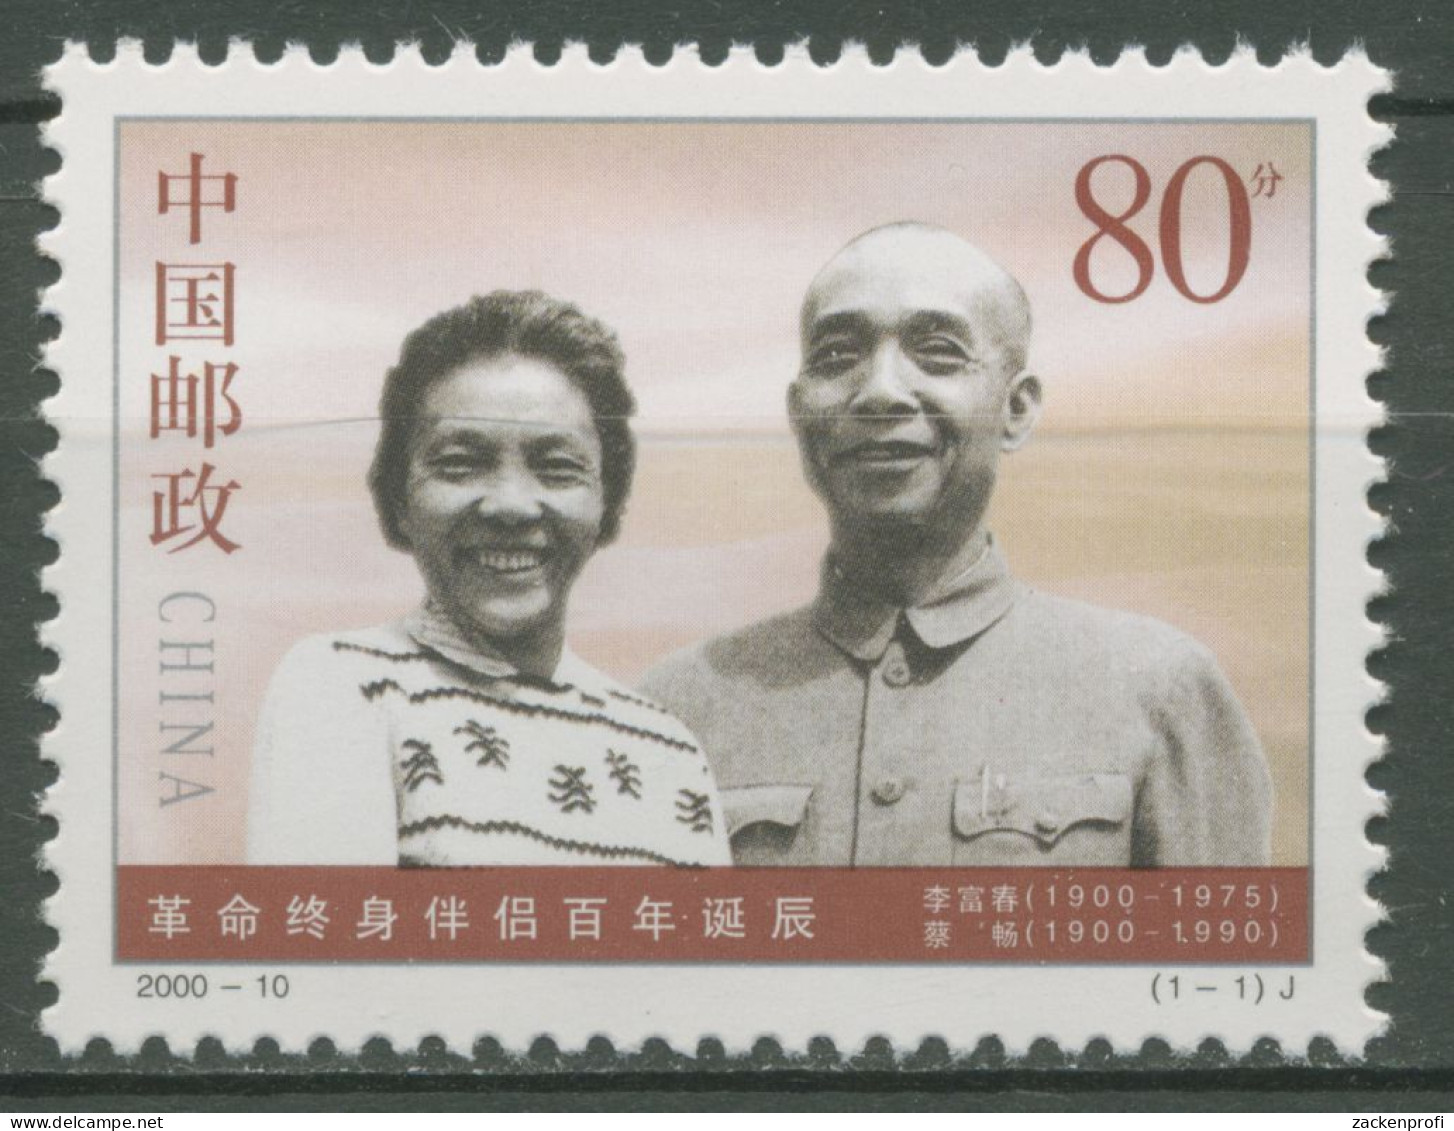 China 2000 Revolutionäre Cai Chang & Li Fuchun 3147 Postfrisch - Ongebruikt